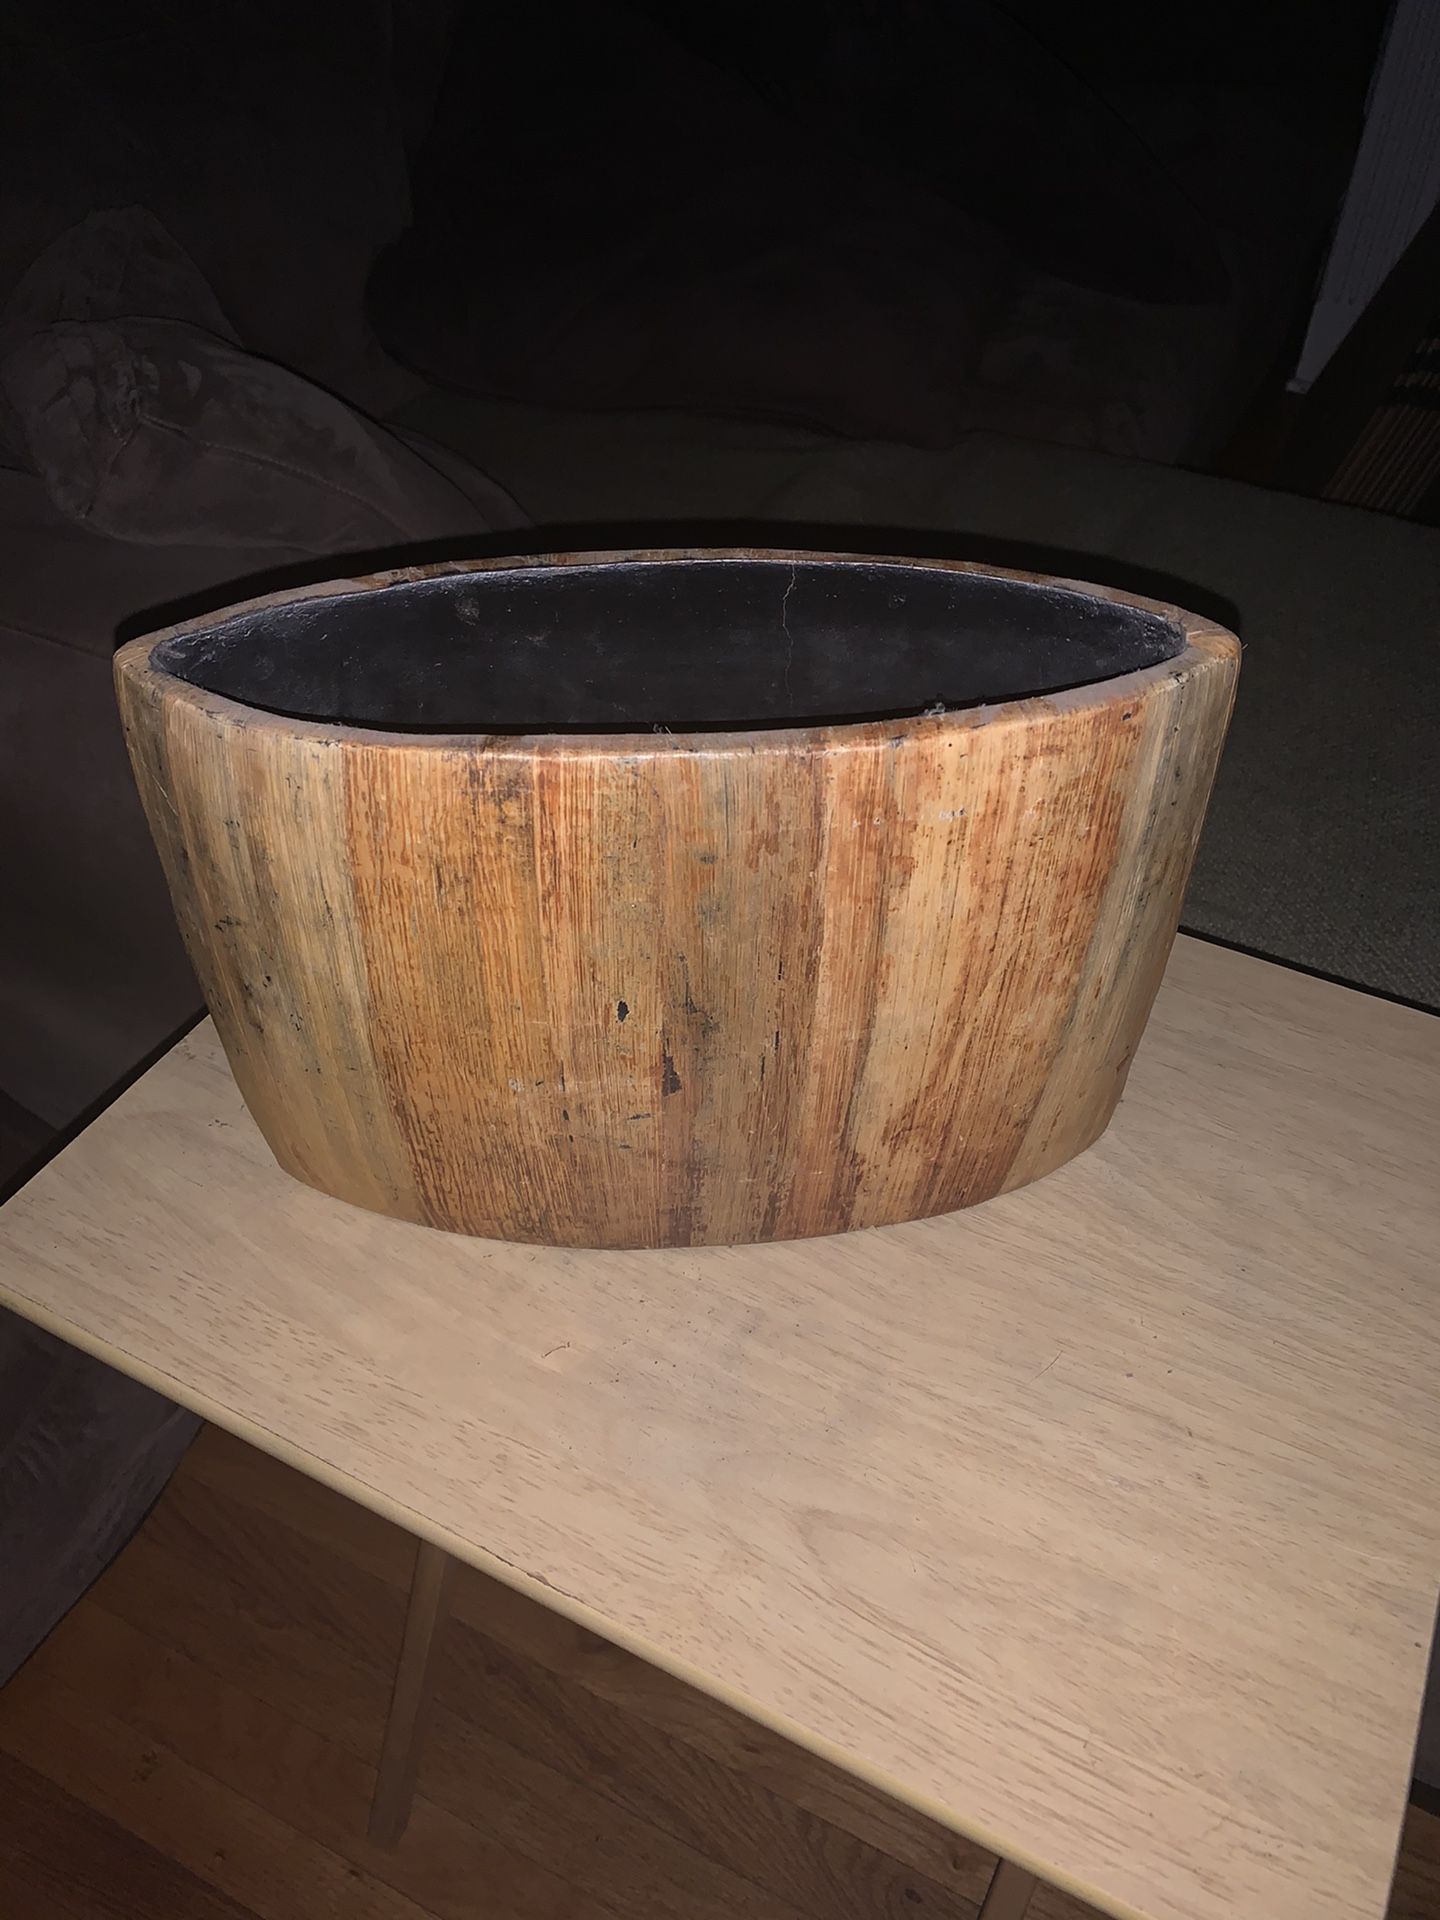 Wooden vase or item holder from Crate & Barrel